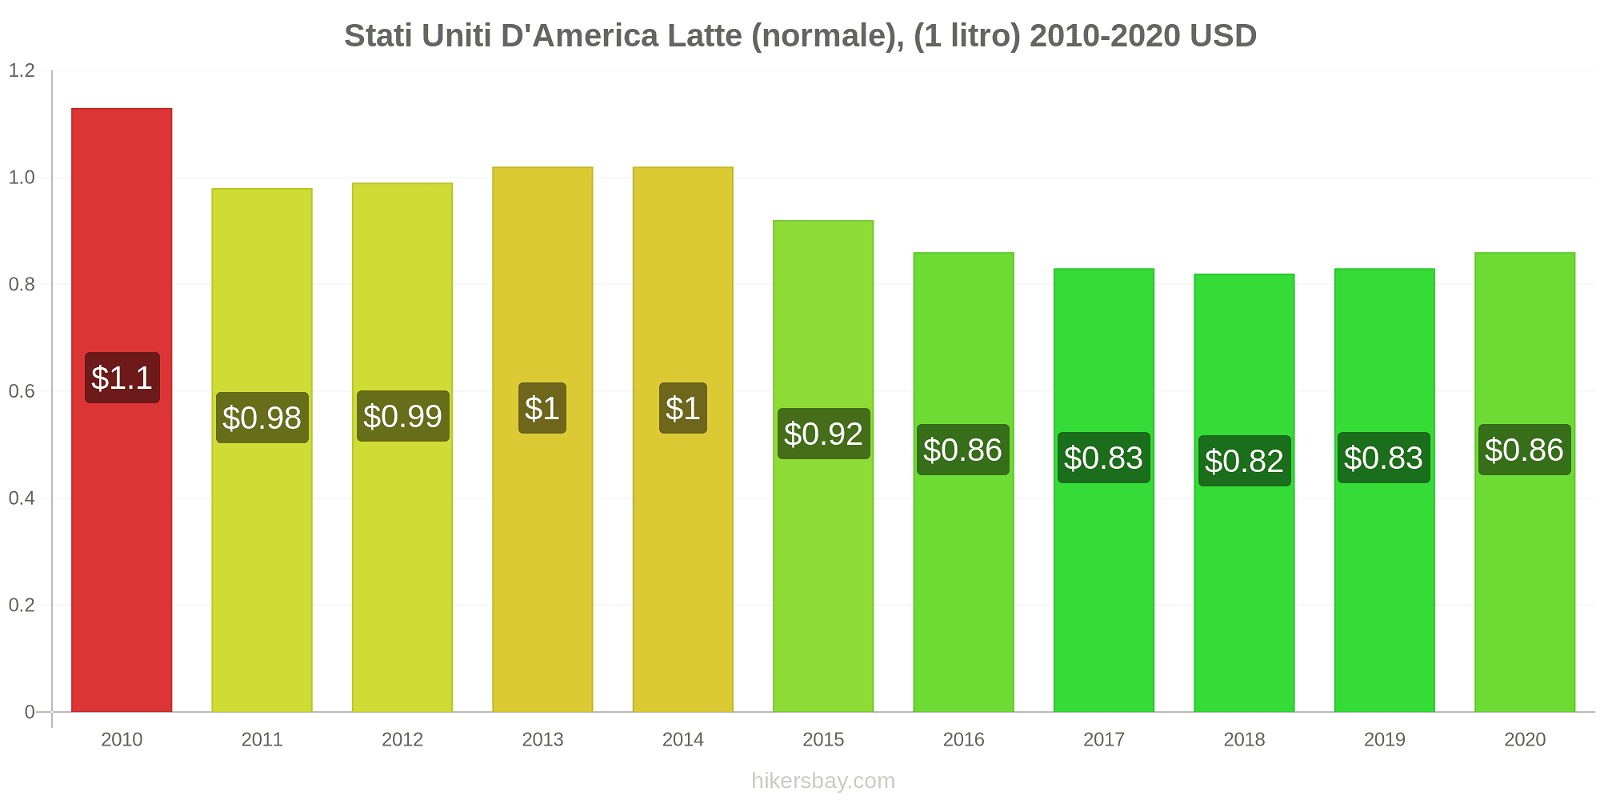 Stati Uniti D'America variazioni di prezzo Latte (1 litro) hikersbay.com